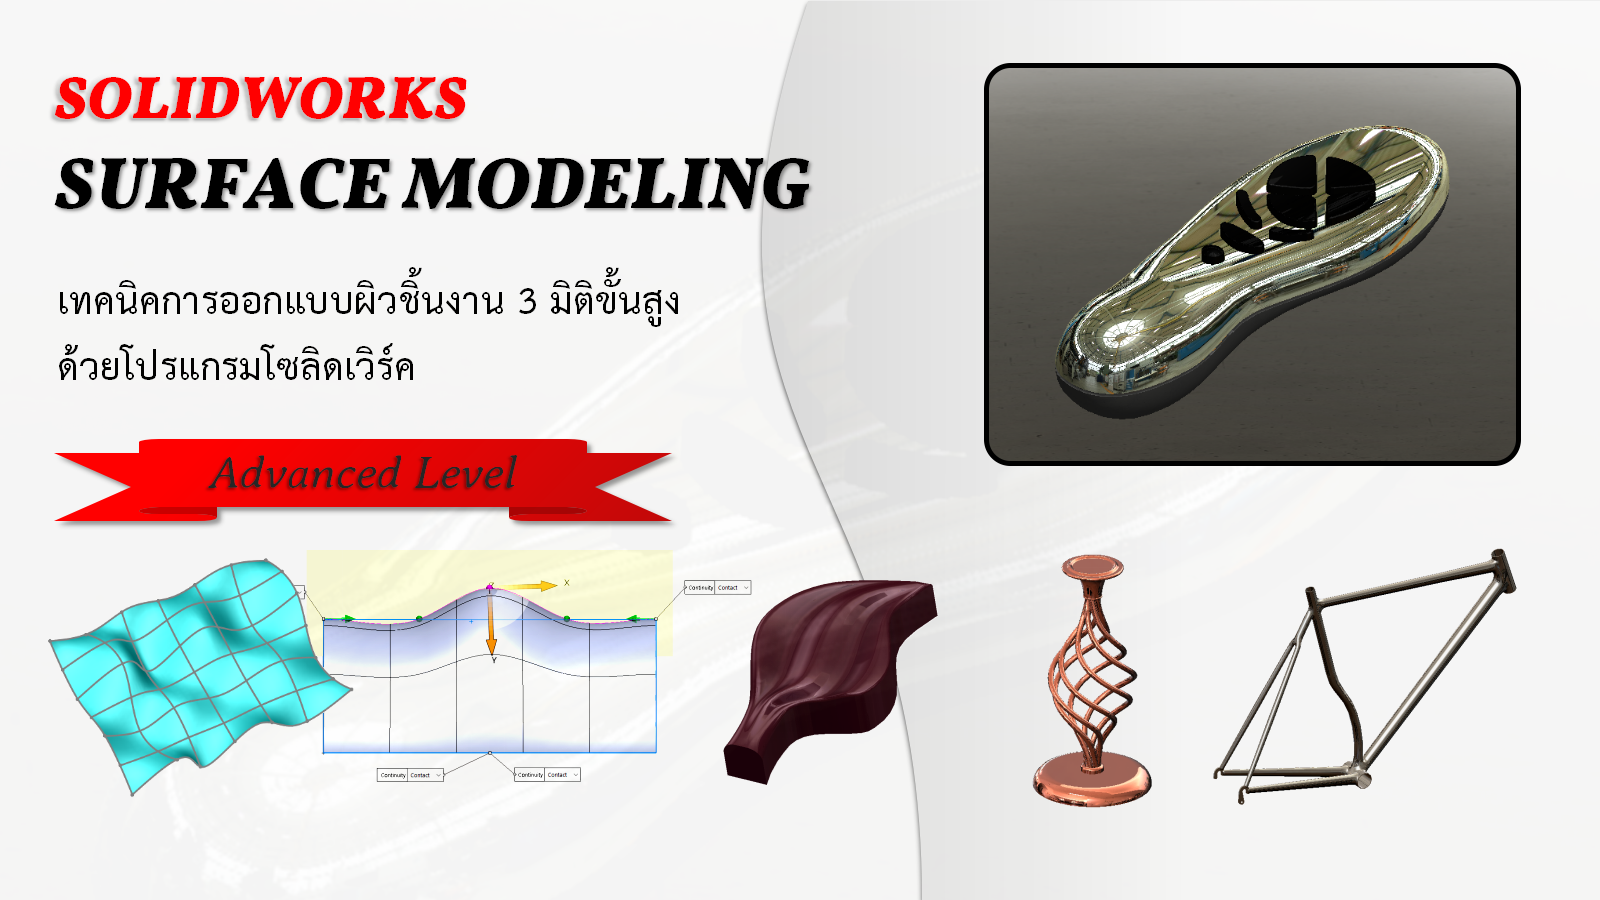 เทคนิคการออกแบบผิวชิ้นงาน 3 มิติ ขั้นสูง (SolidWorks Surface Modeling)